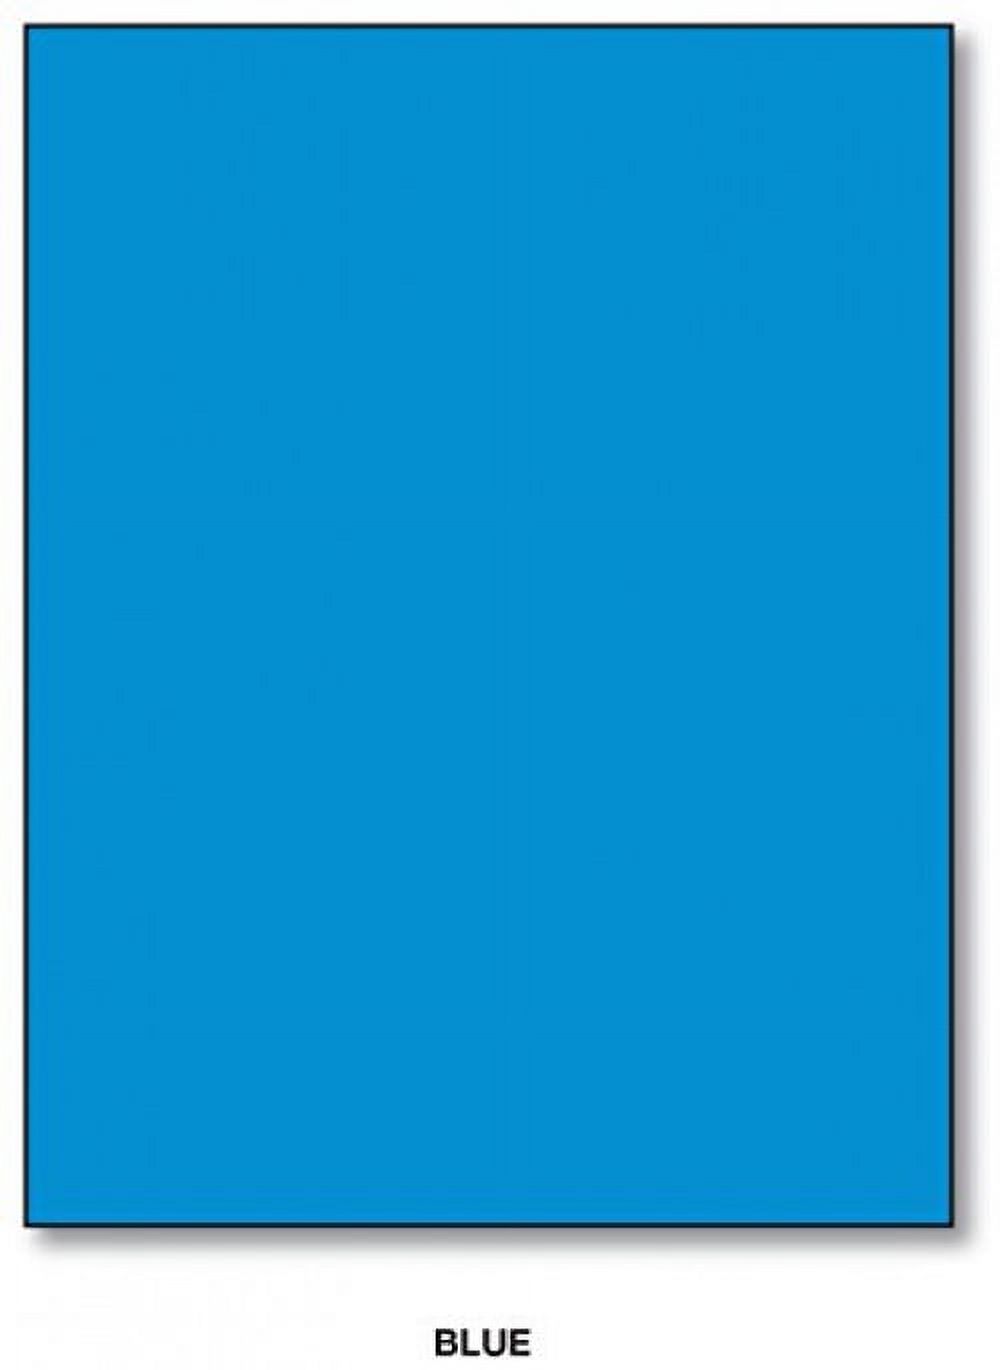 Mohawk BriteHue Bright Color Paper | Blue | 24lb Bond / 60lb Text Paper |  8.5" x 11" (Letter Size) | 100 Sheets Per Pack - image 1 of 2